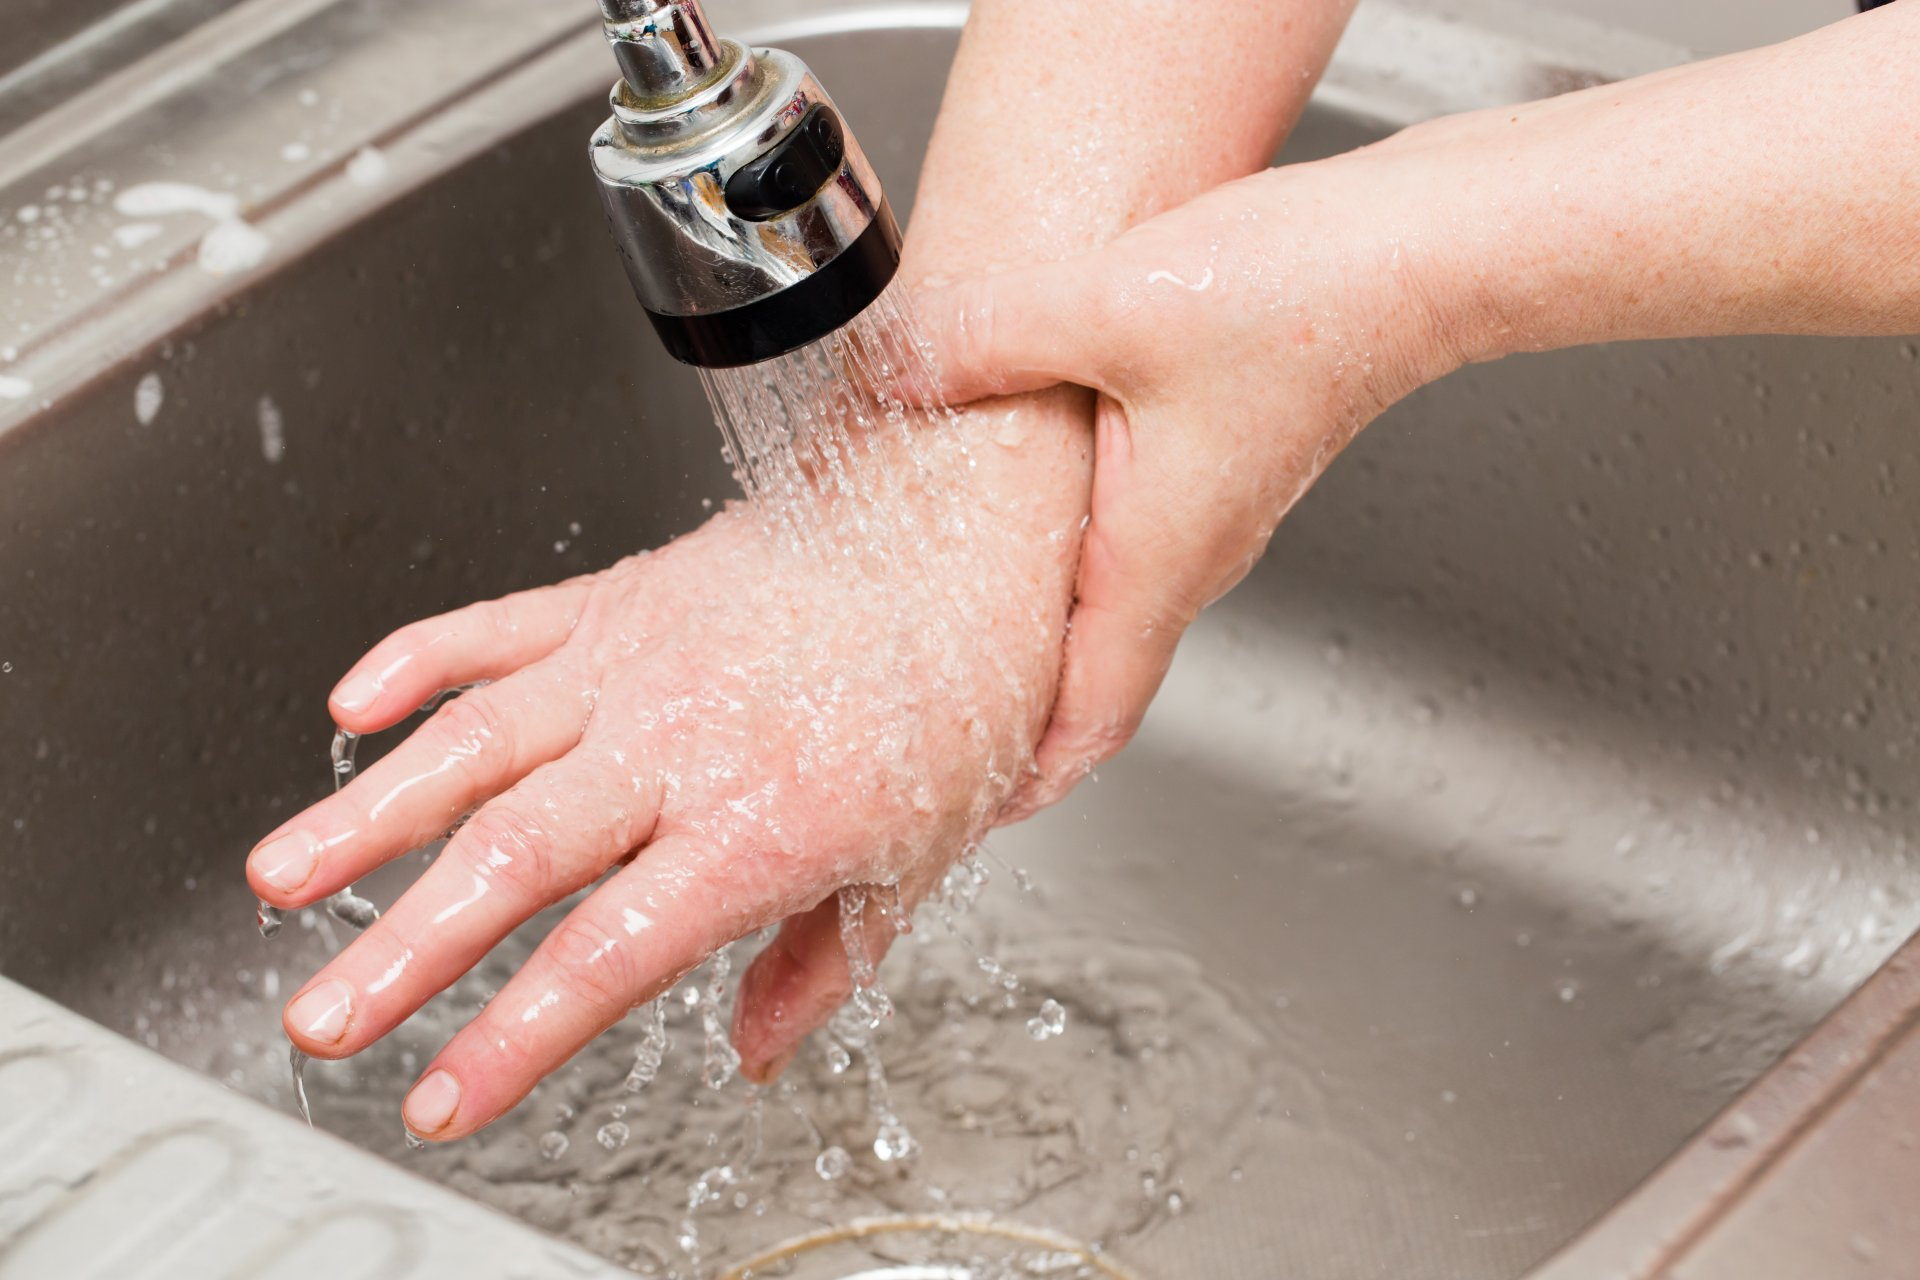 Горячая вода волос. Руки под краном с водой. Мытье рук под краном. Руки под струей воды. Руки под струей воды горячей.